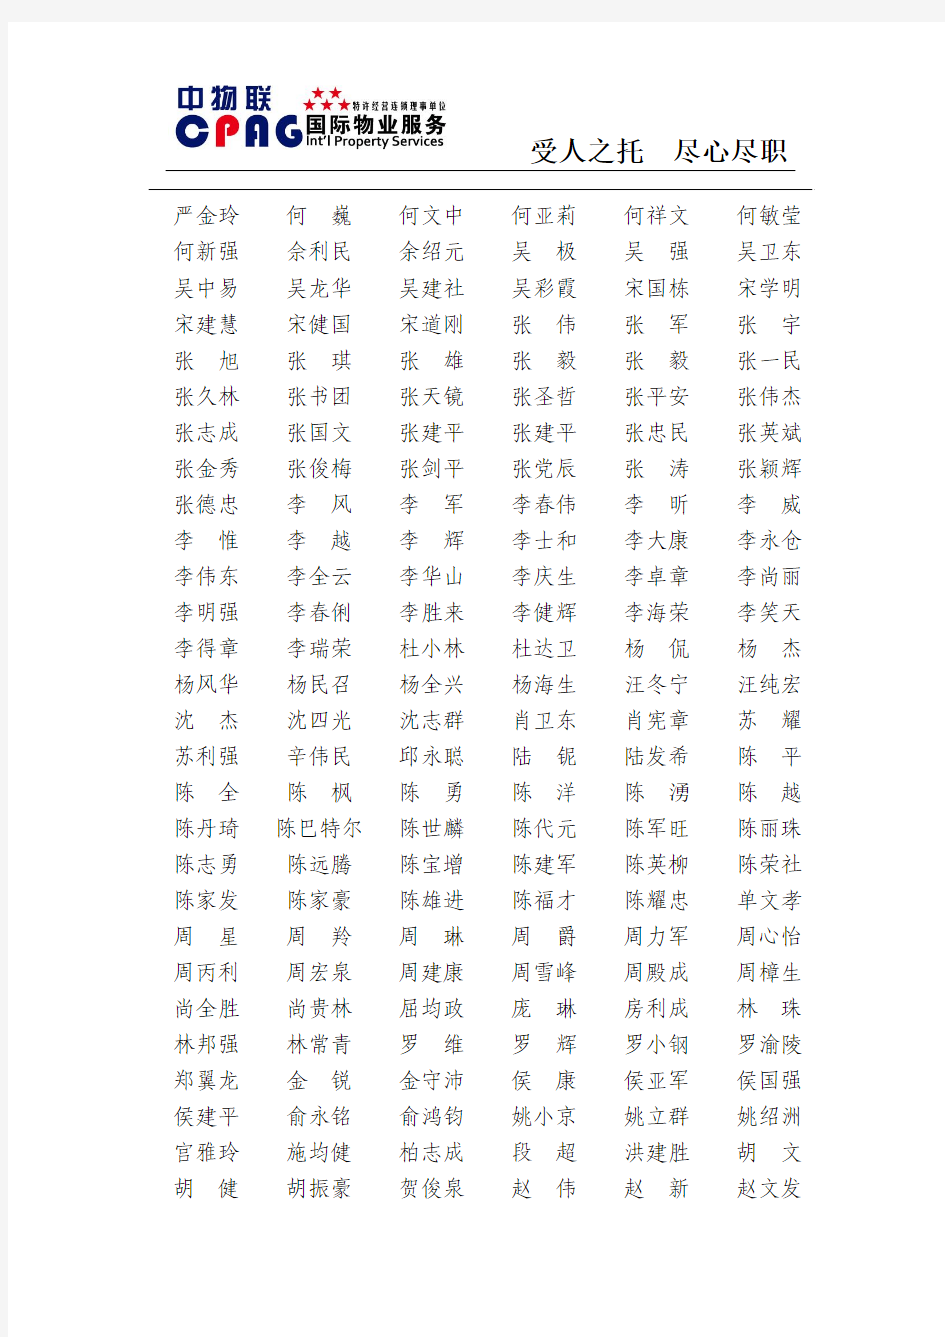 中国物业管理协会第三届理事会常务理事名单[1]